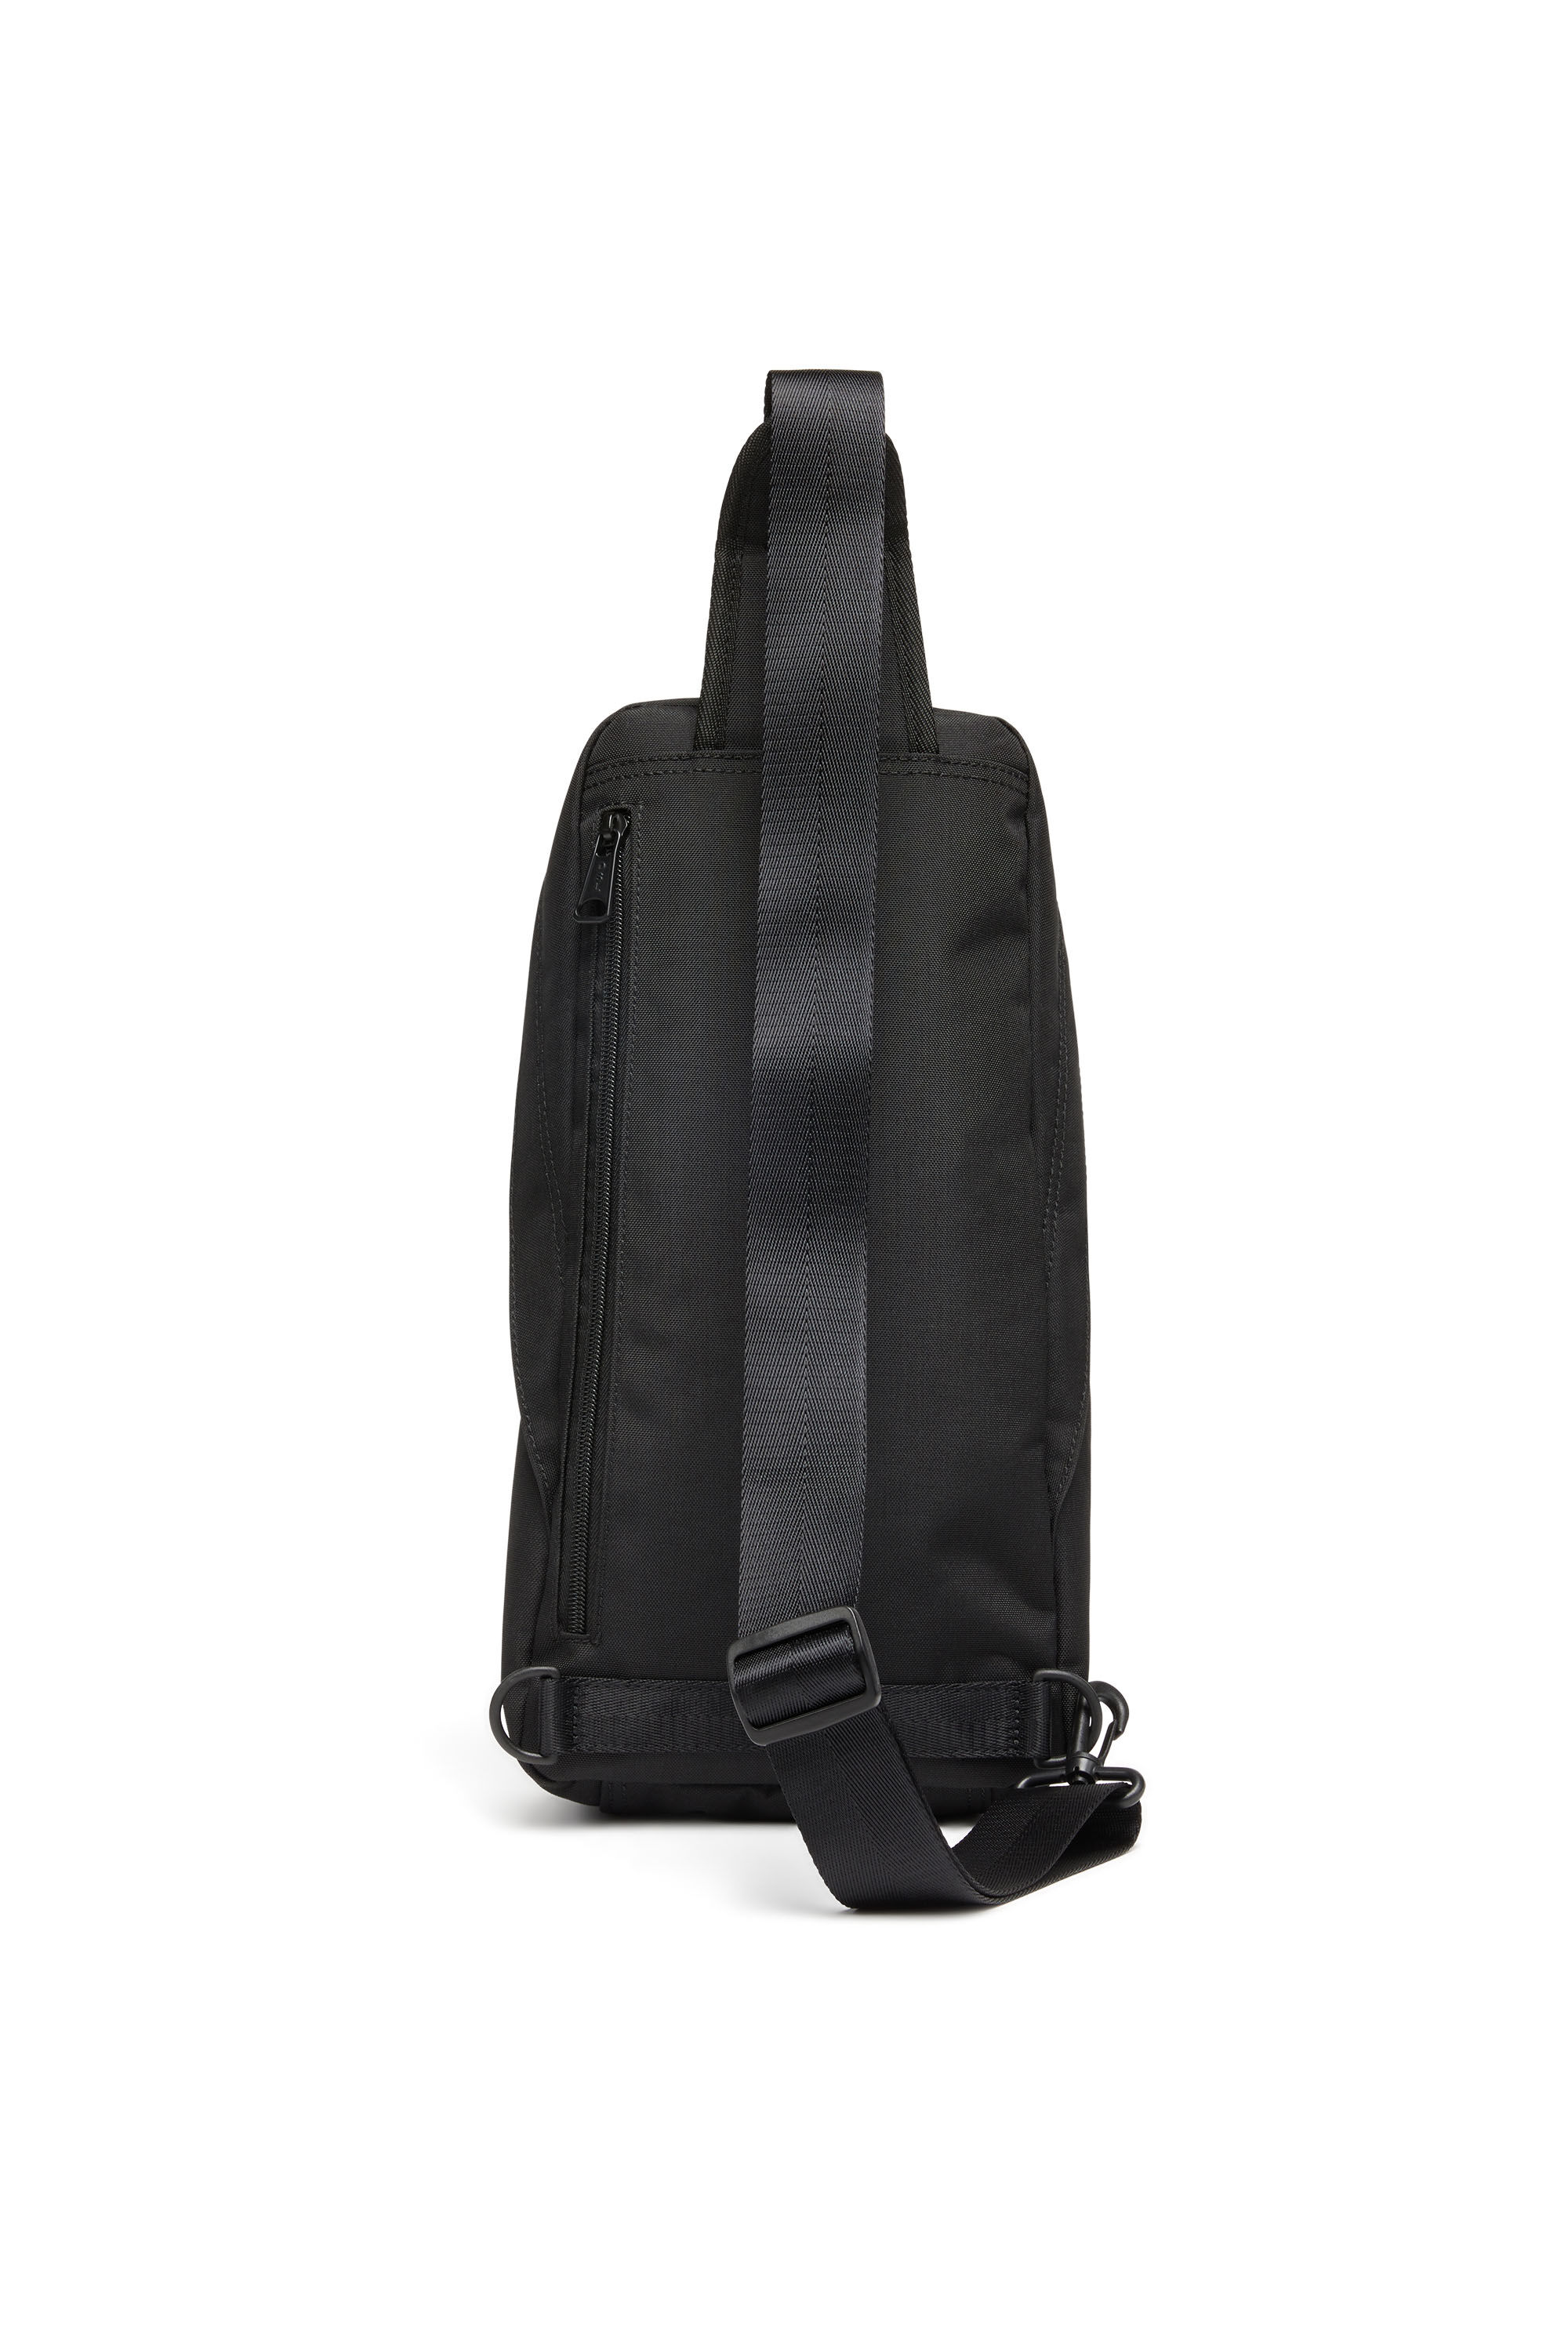 D-BSC SLING BAG X D-Bsc Sling Bag X - Sling backpack in heavy-duty